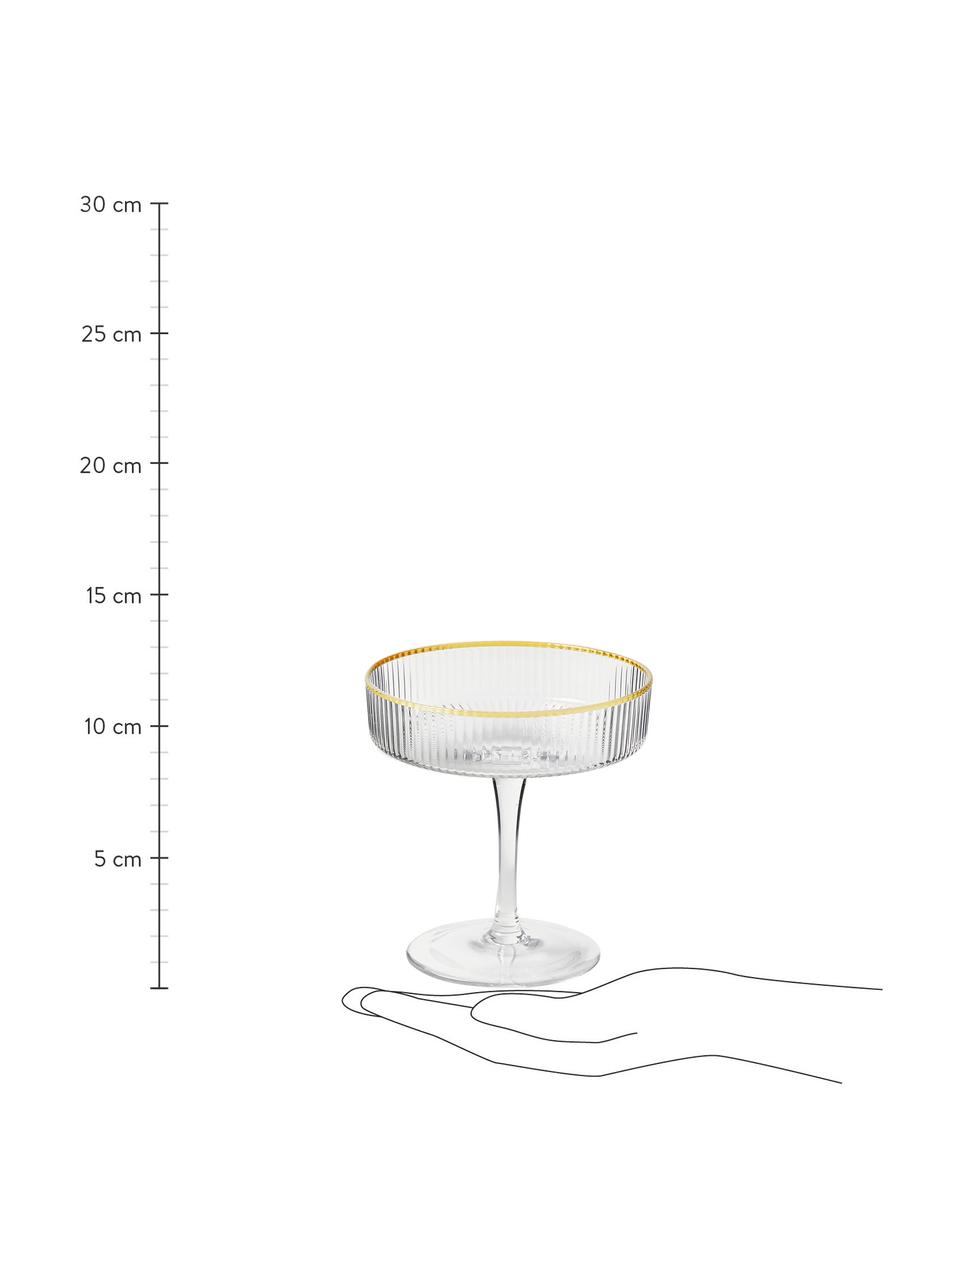 Handgefertigte Champagnerschalen Minna mit Rillenrelief und Goldrand, 4 Stück, Glas, mundgeblasen, Transparent, Goldfarben, Ø 11 x H 11 cm